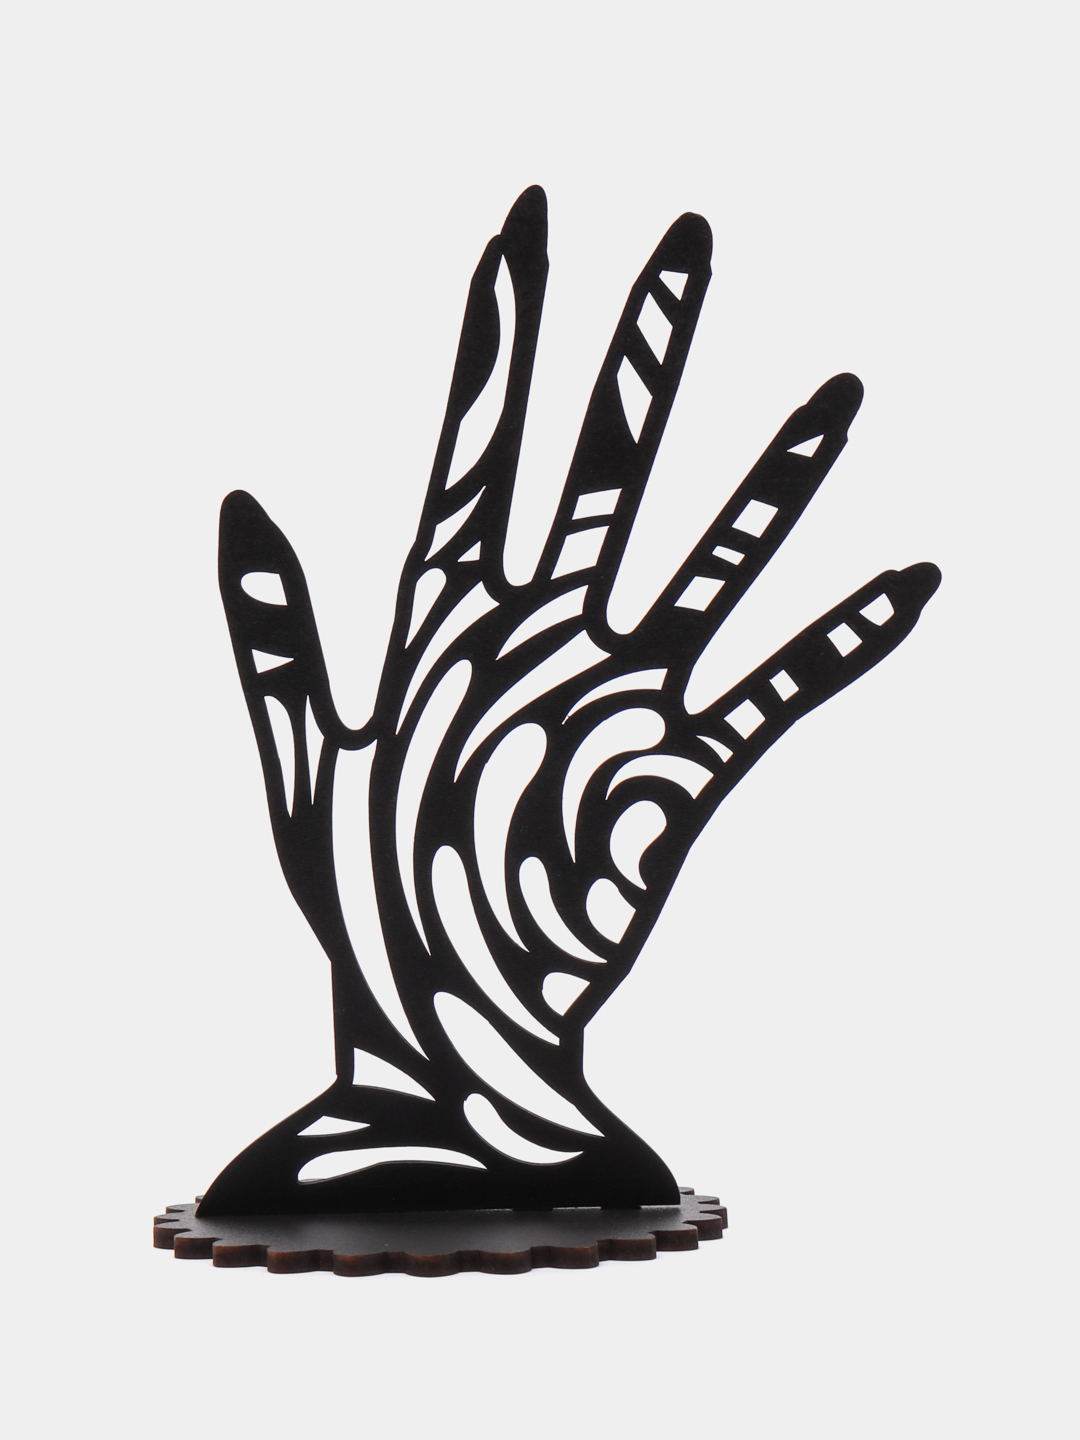 Подставка для украшений, для пало санто «Рука» из гипса, 5 х 9 см, чёрная